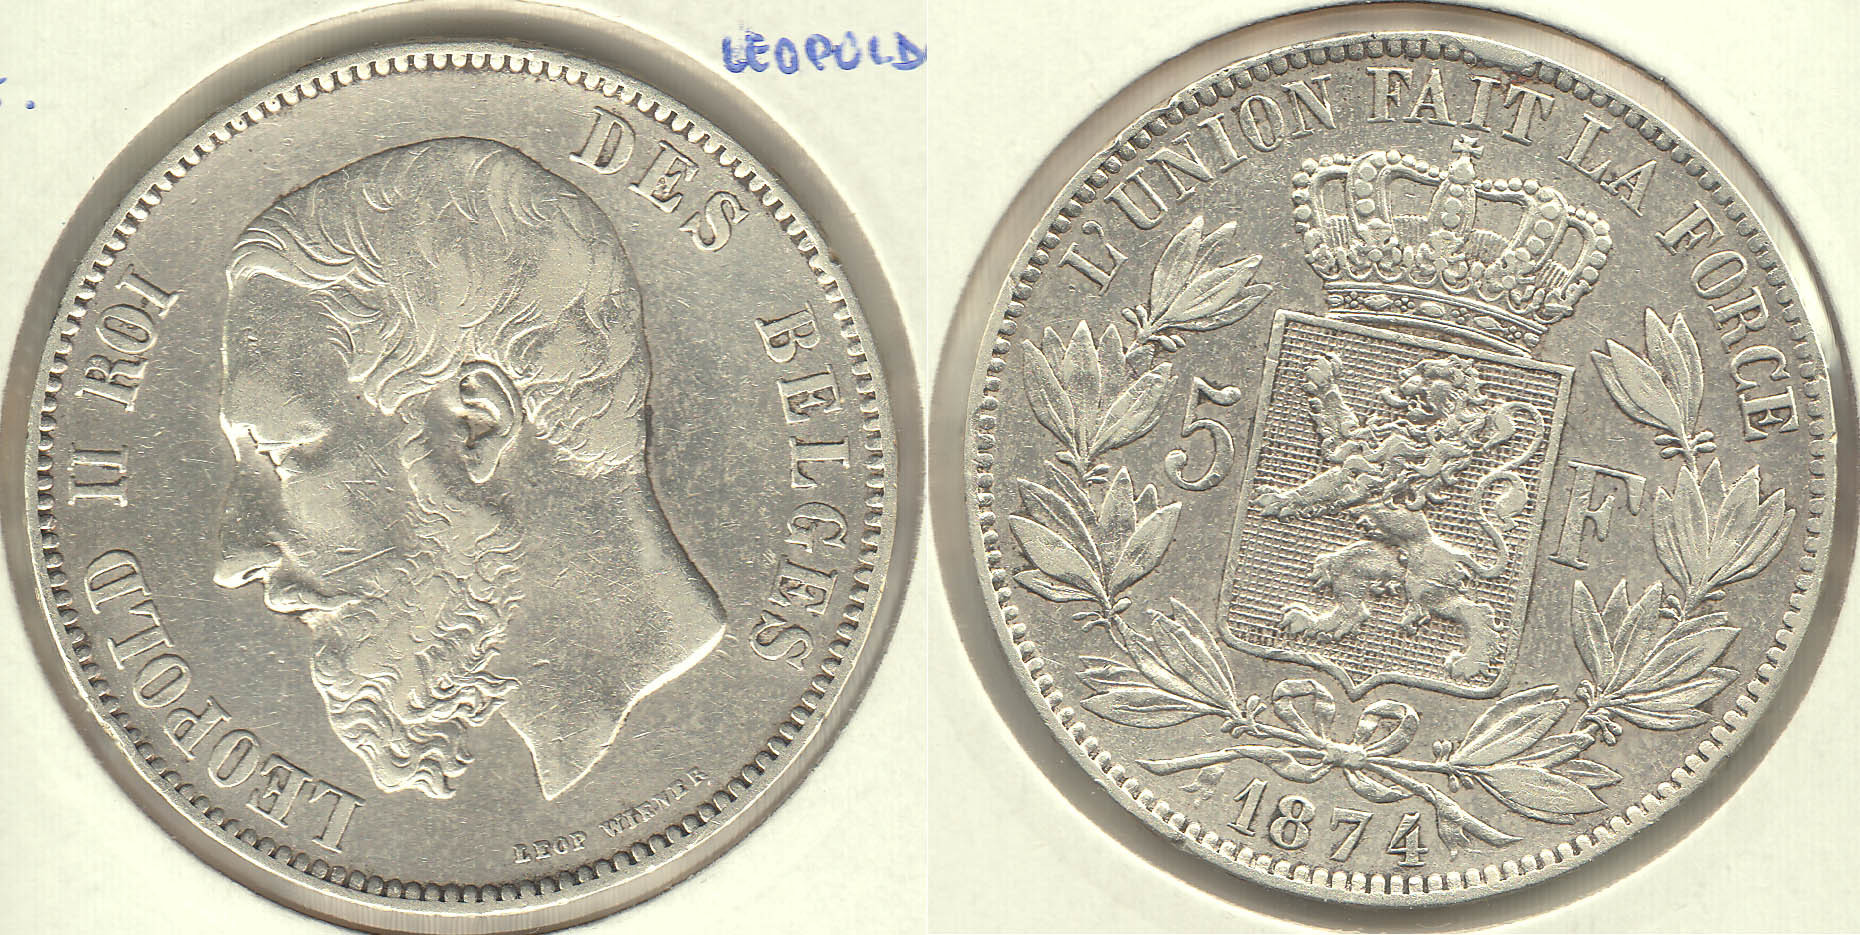 BELGICA - BELGIUM. 5 FRANCOS (FRANCS) DE 1874. PLATA 0.900.